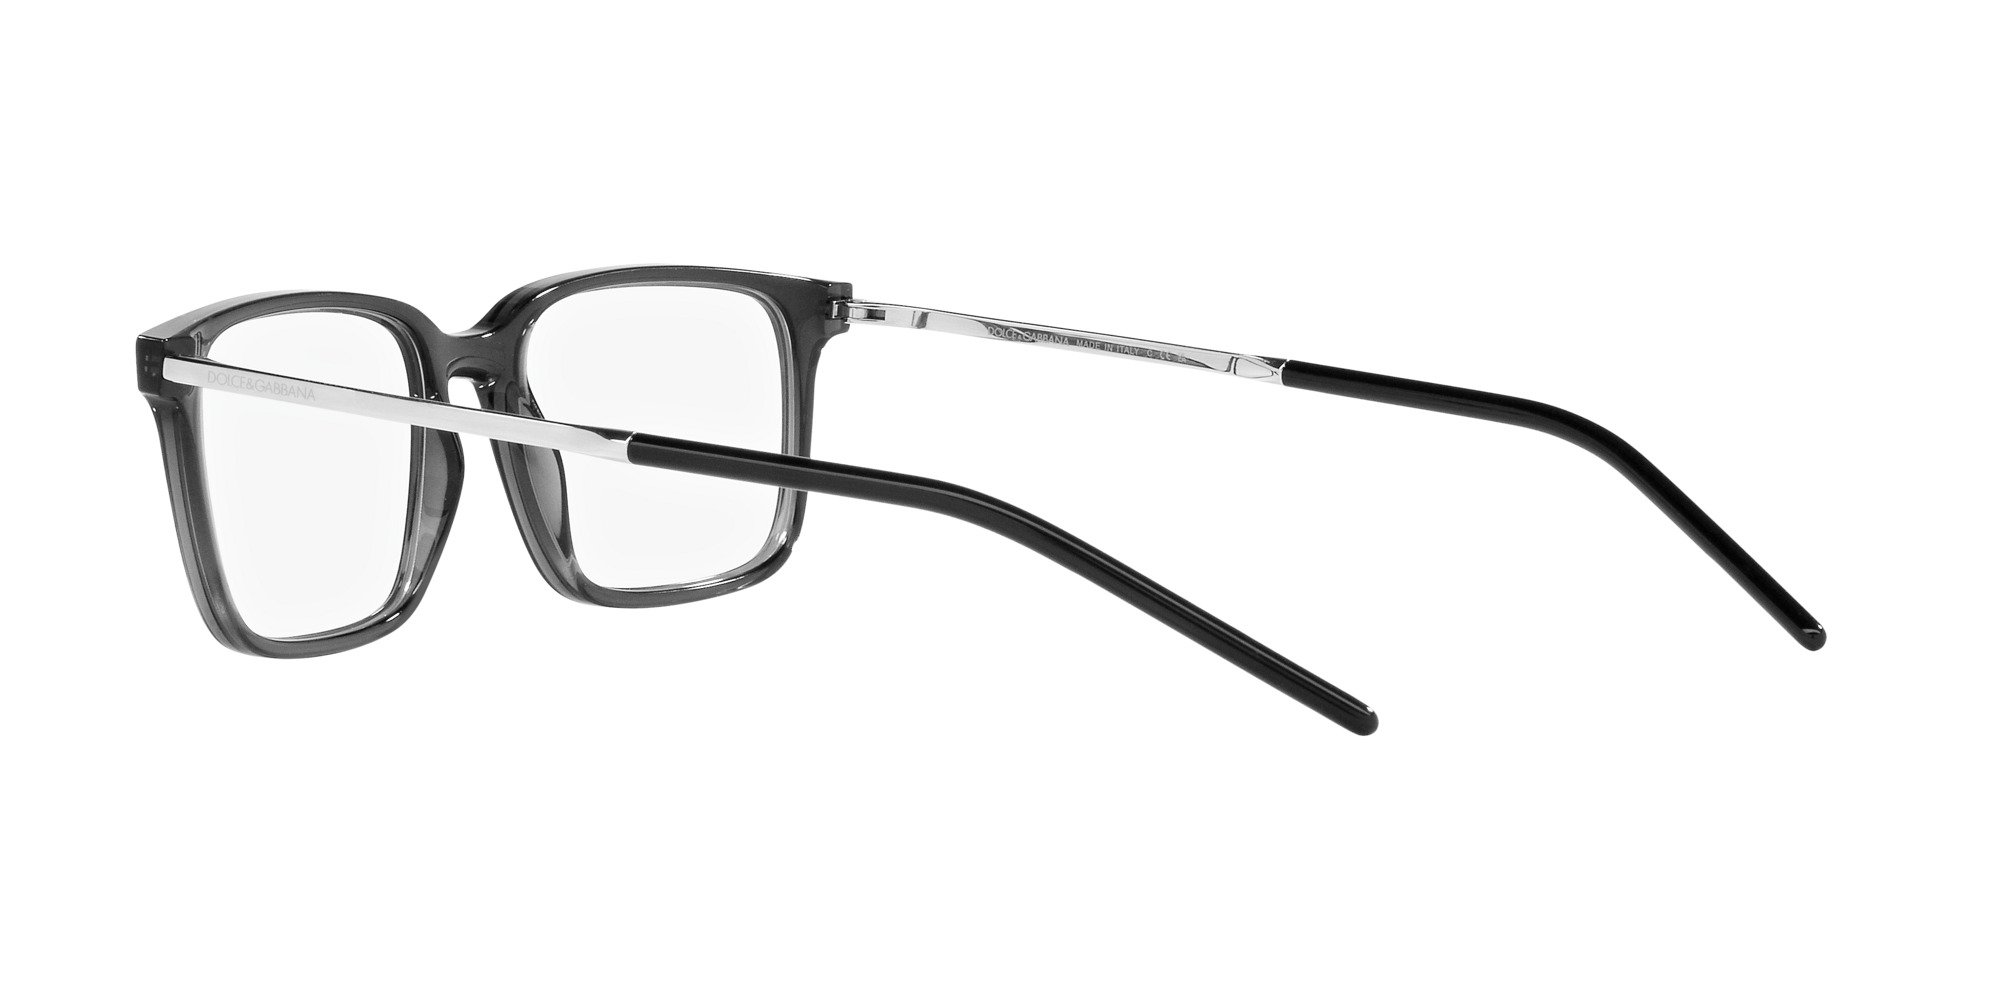 Das Bild zeigt die Korrektionsbrille DG5099 3255 von der Marke D&G in grau.